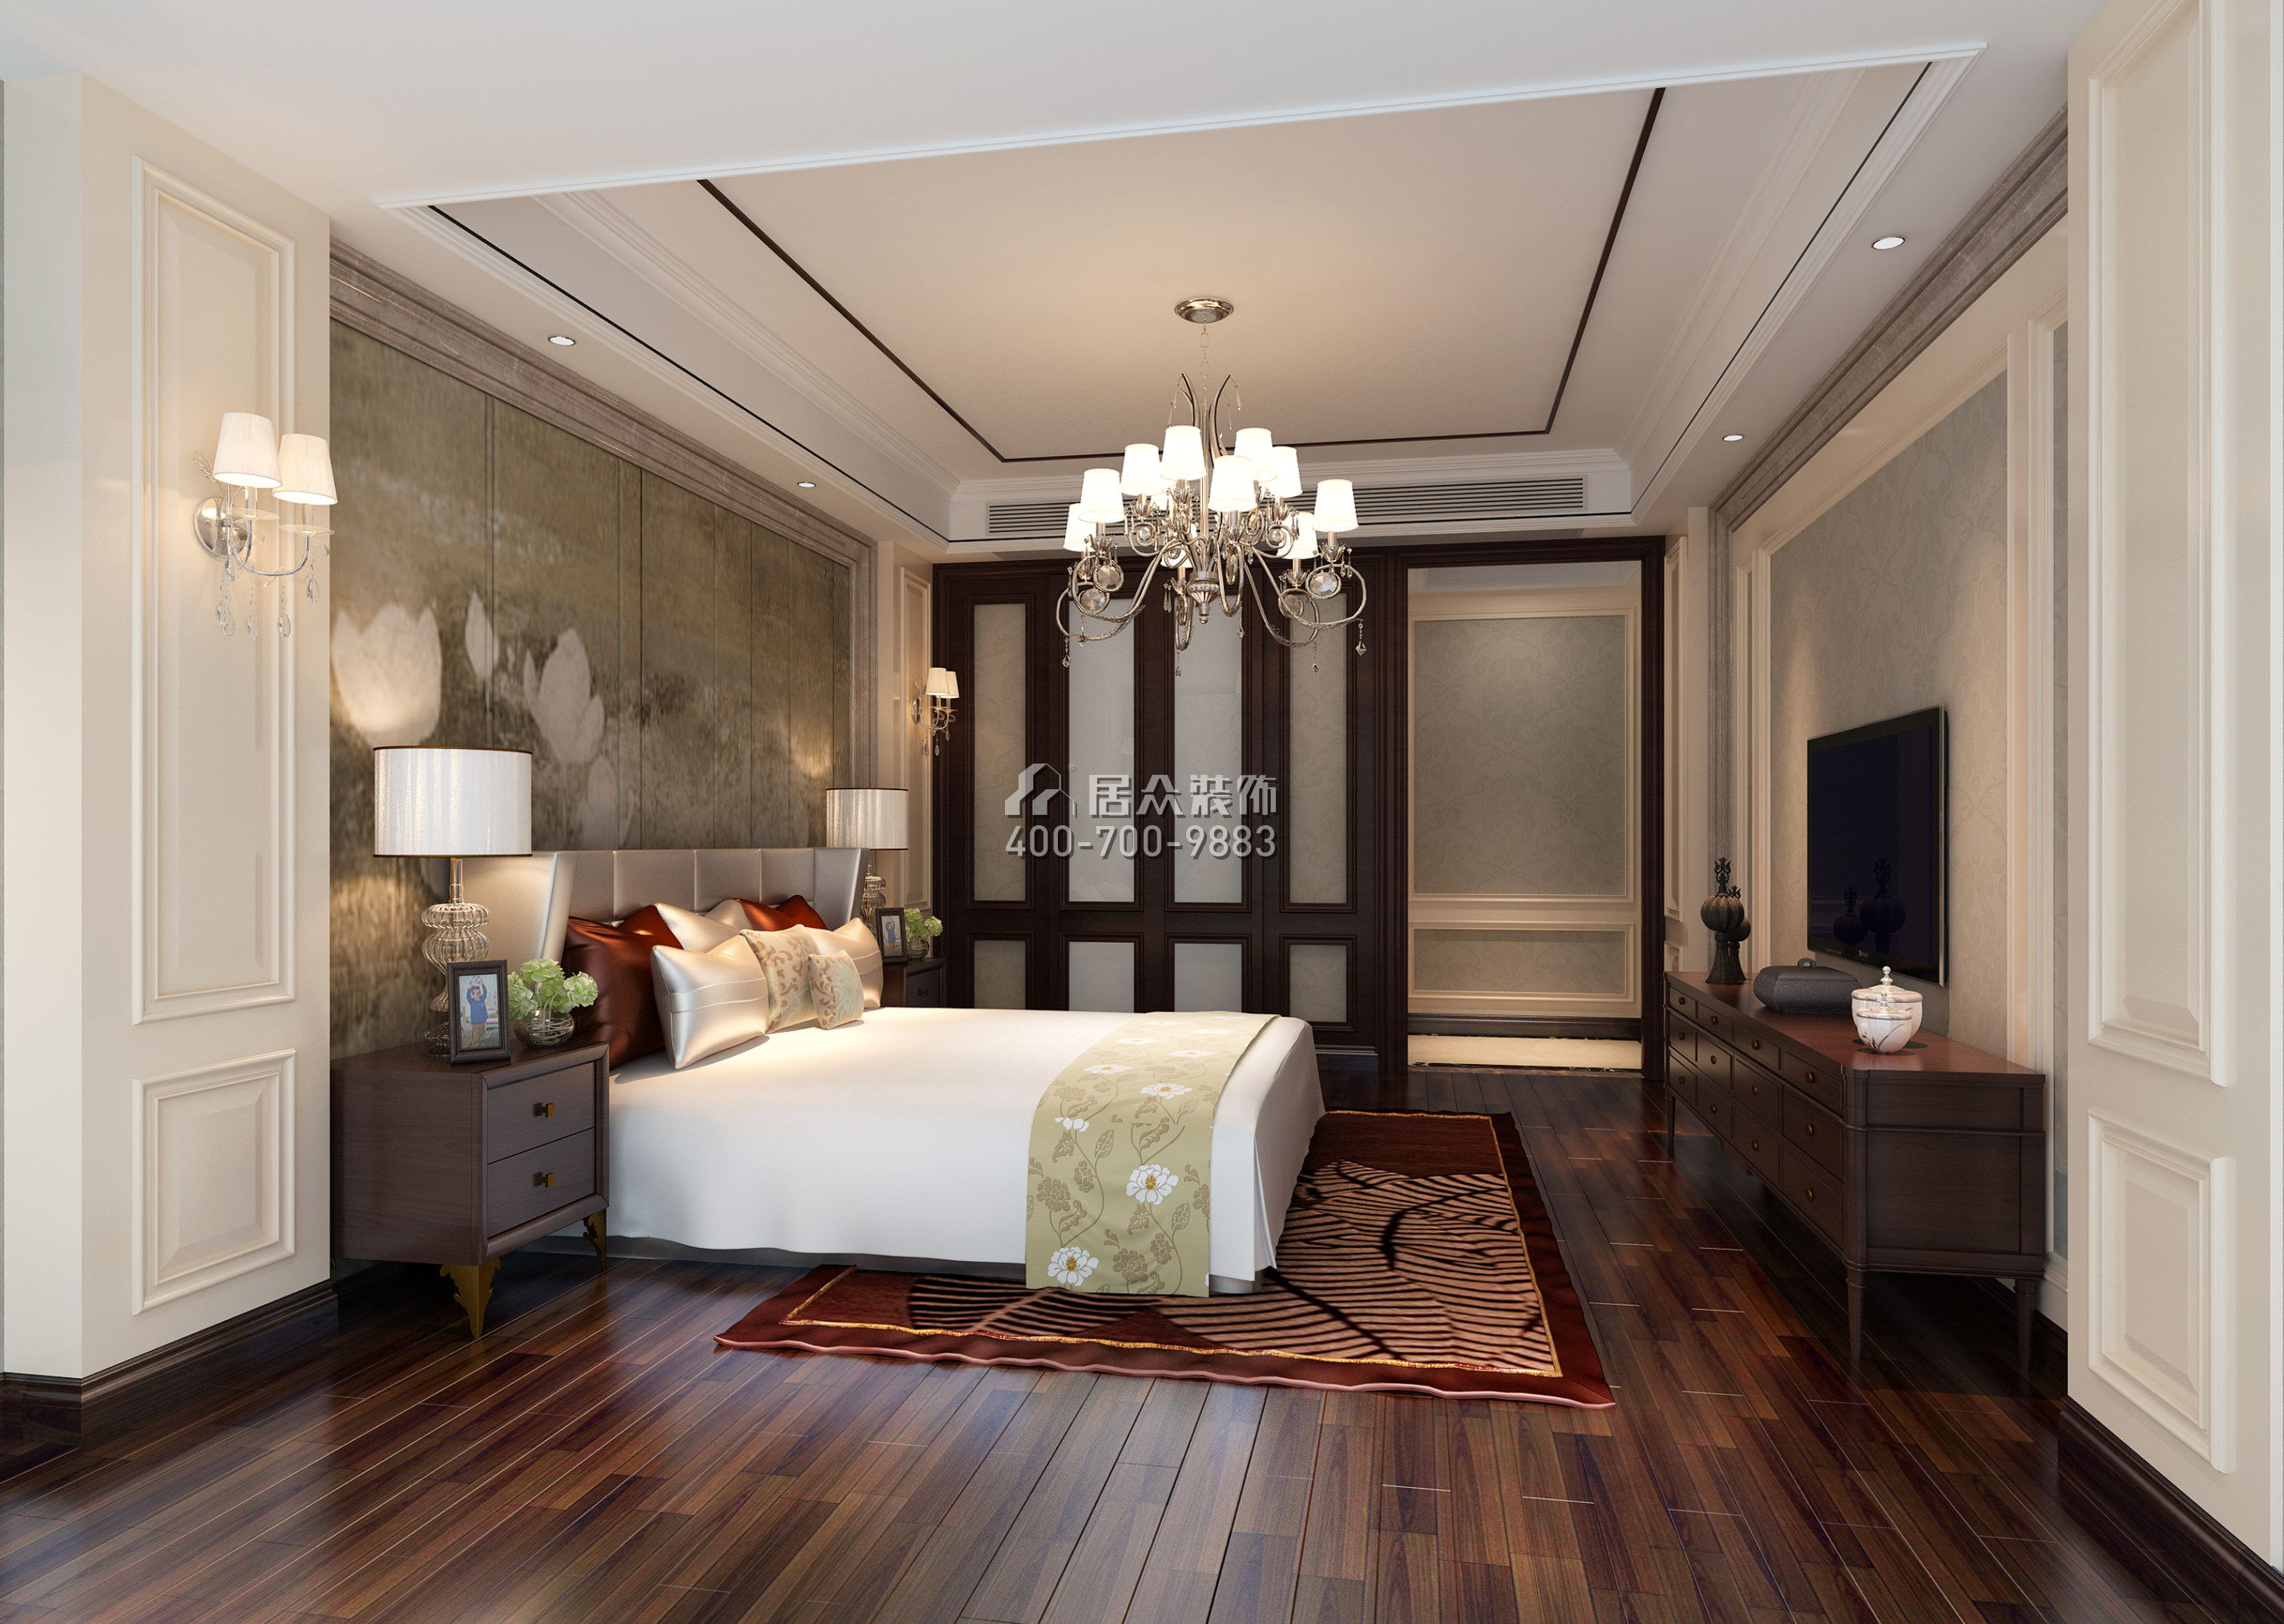 中洲中央公园二期260平方米混搭风格平层户型卧室装修效果图